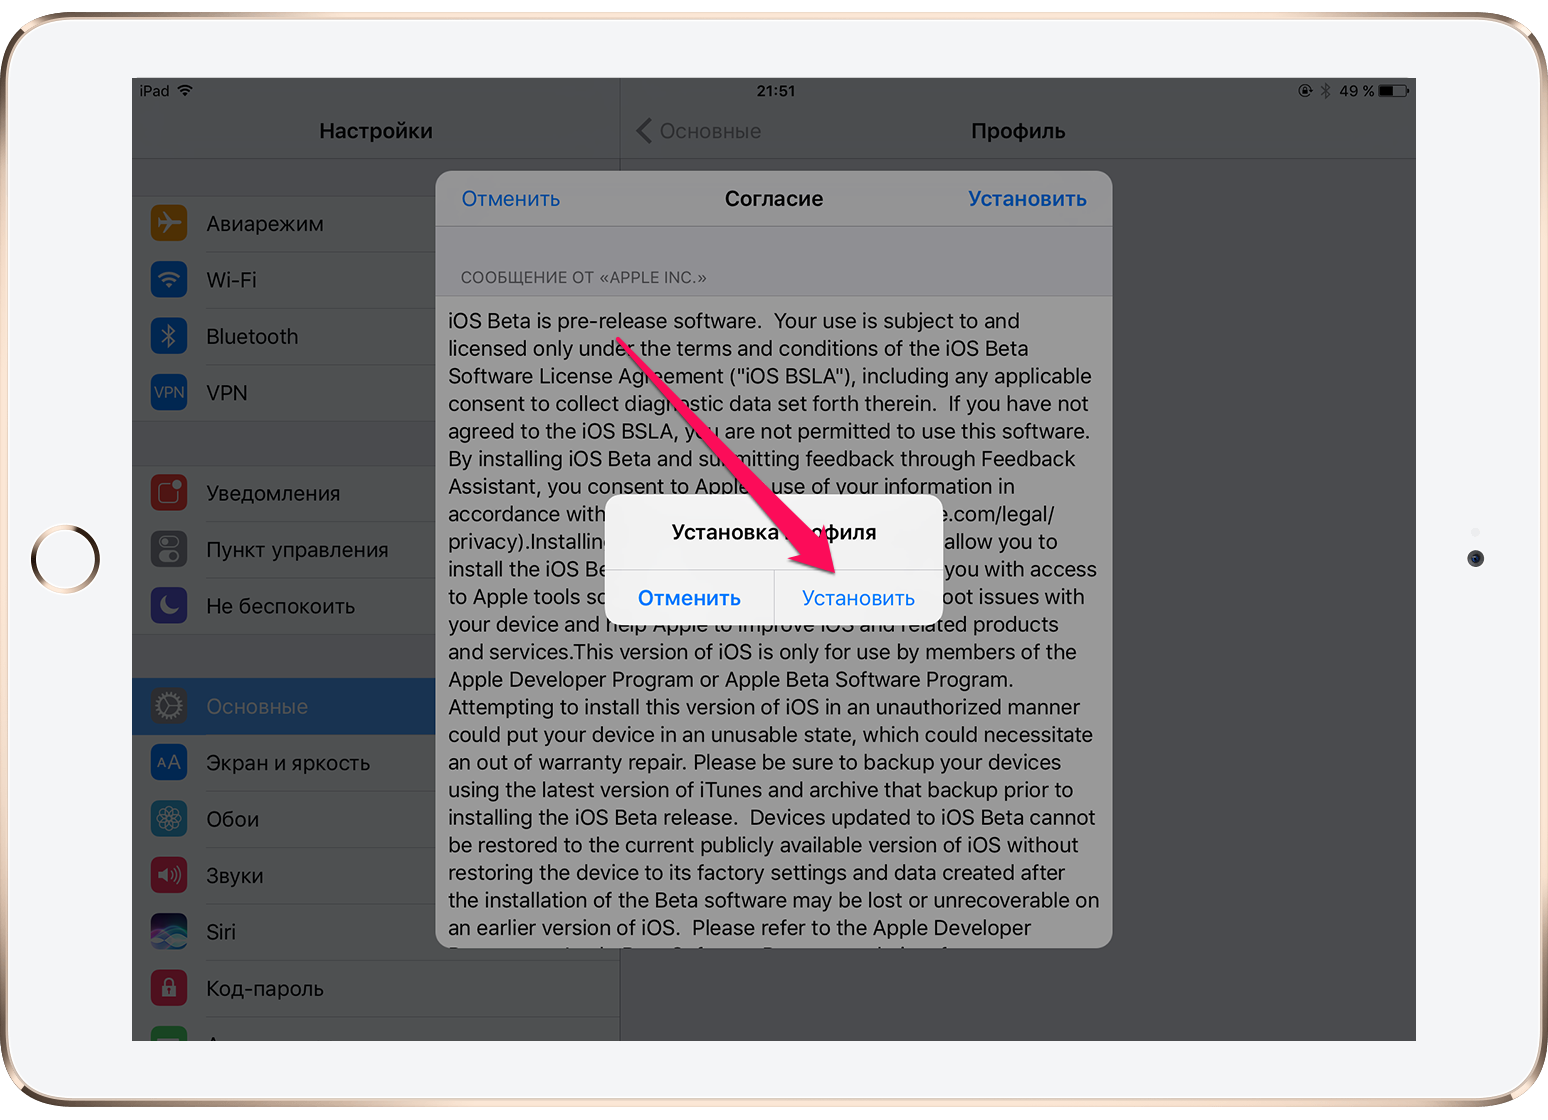 Как установить iOS 10.3 beta 1 без учетной записи разработчика